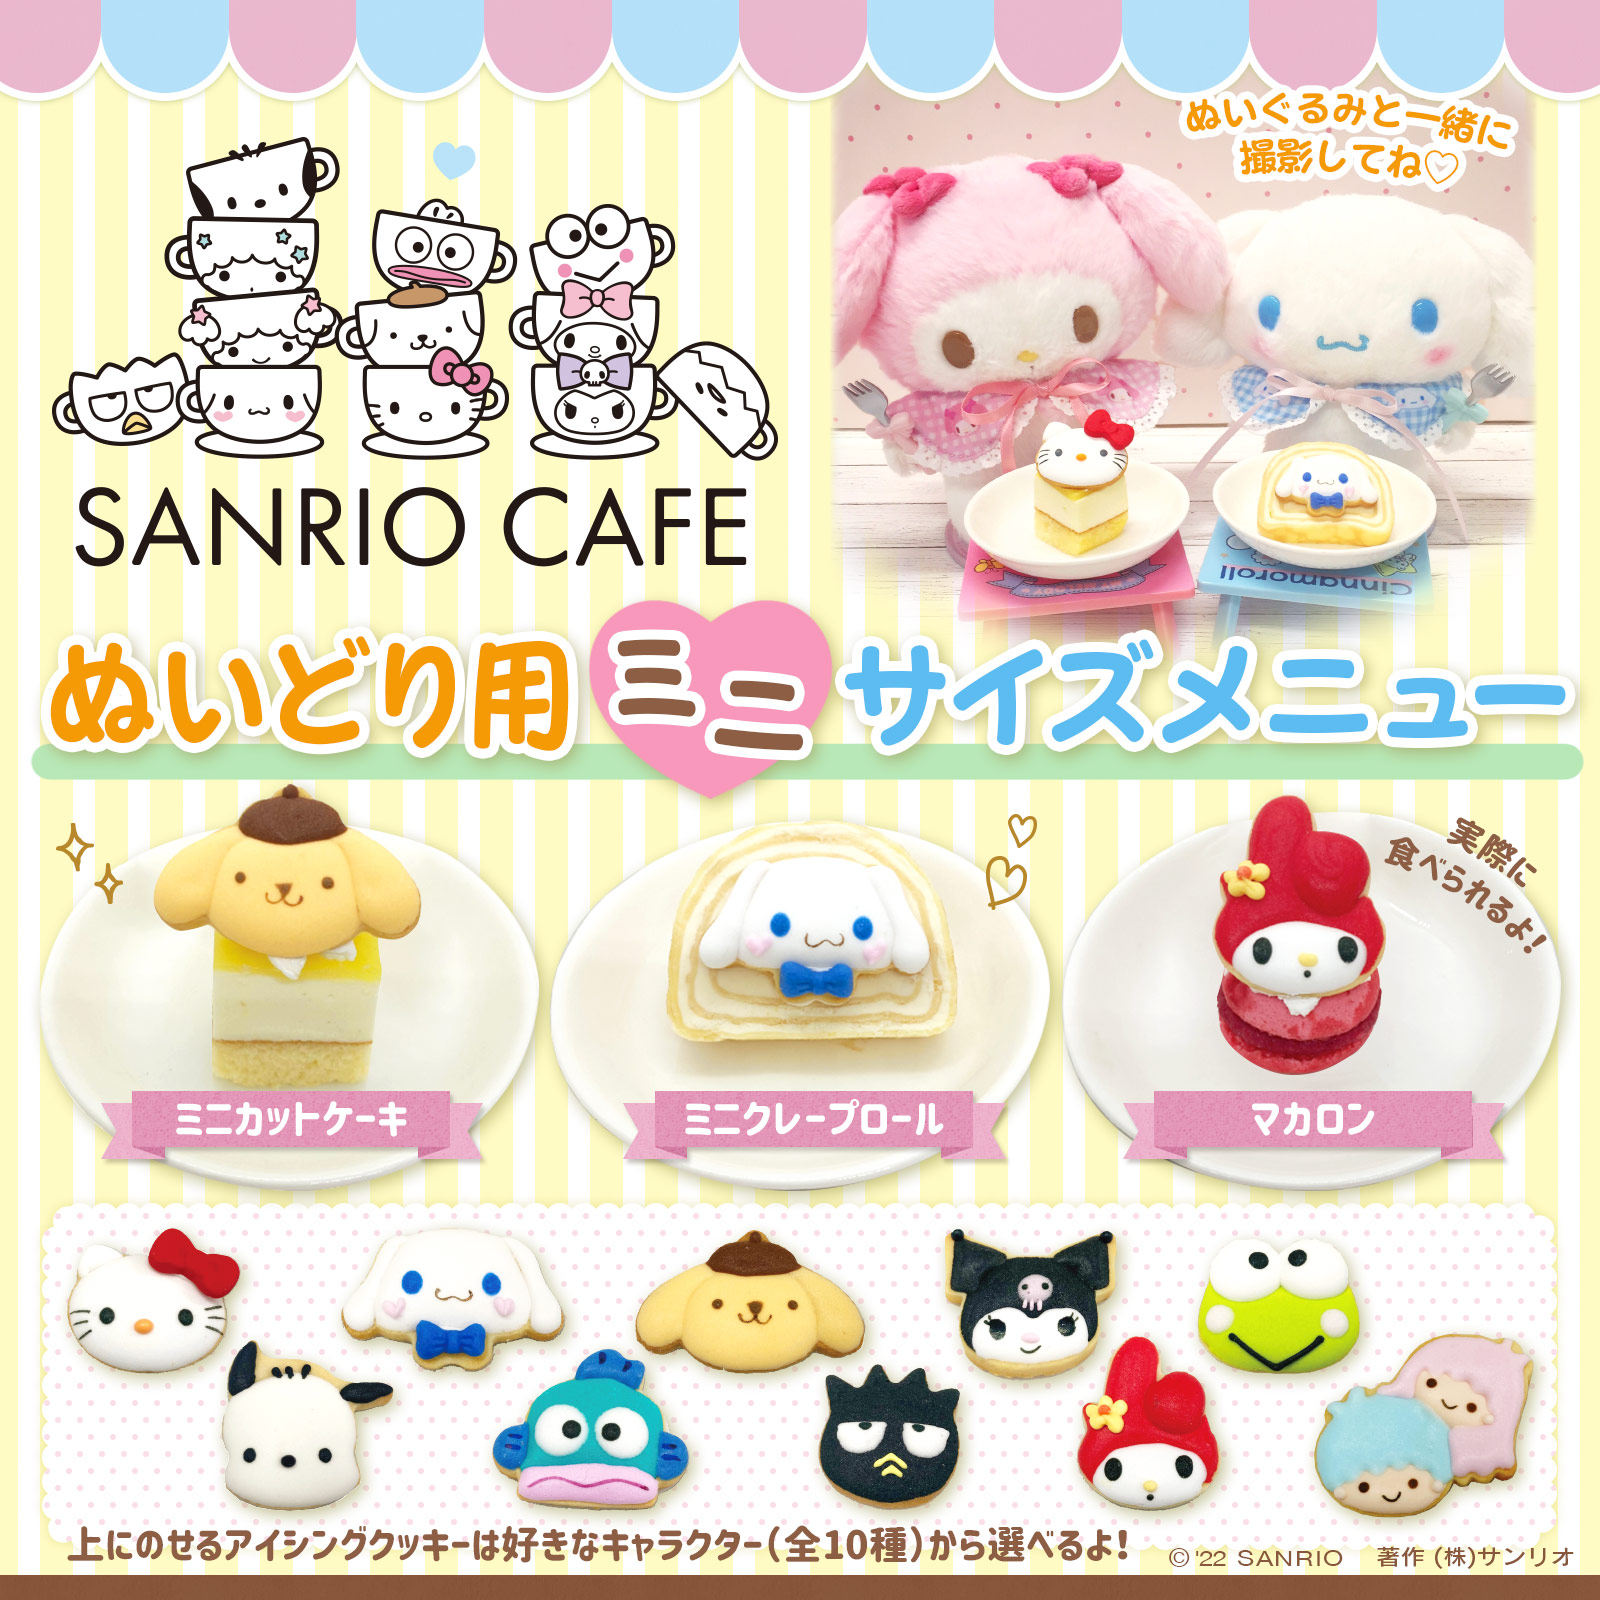 Sanrio Cafe サンリオカフェ 公式サイト